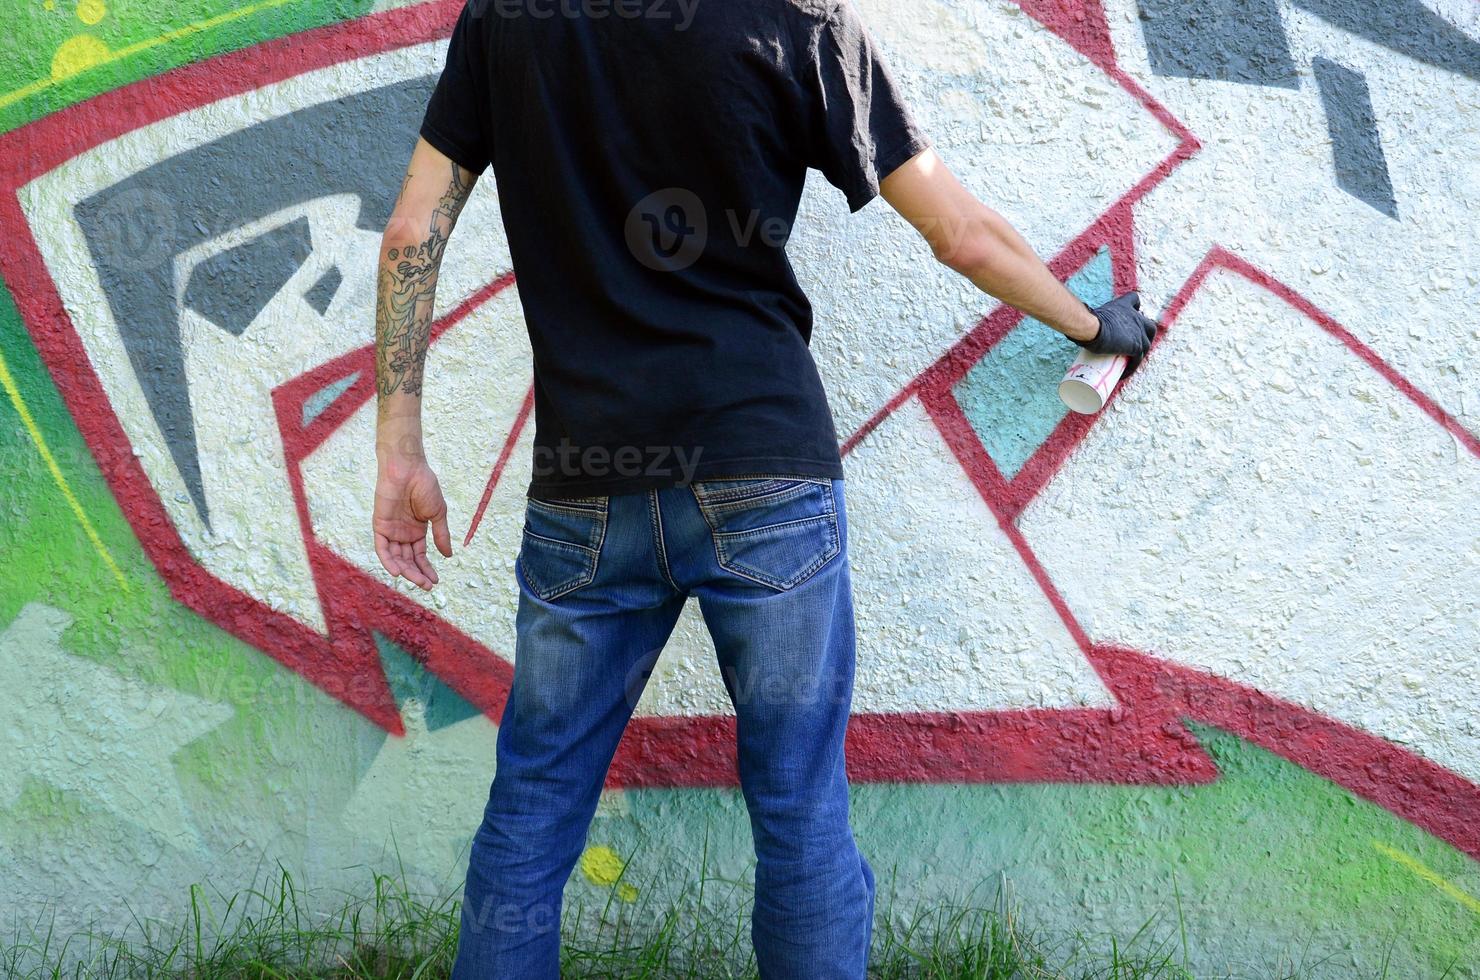 um jovem hooligan pinta graffiti em uma parede de concreto. conceito de vandalismo ilegal. arte de rua foto